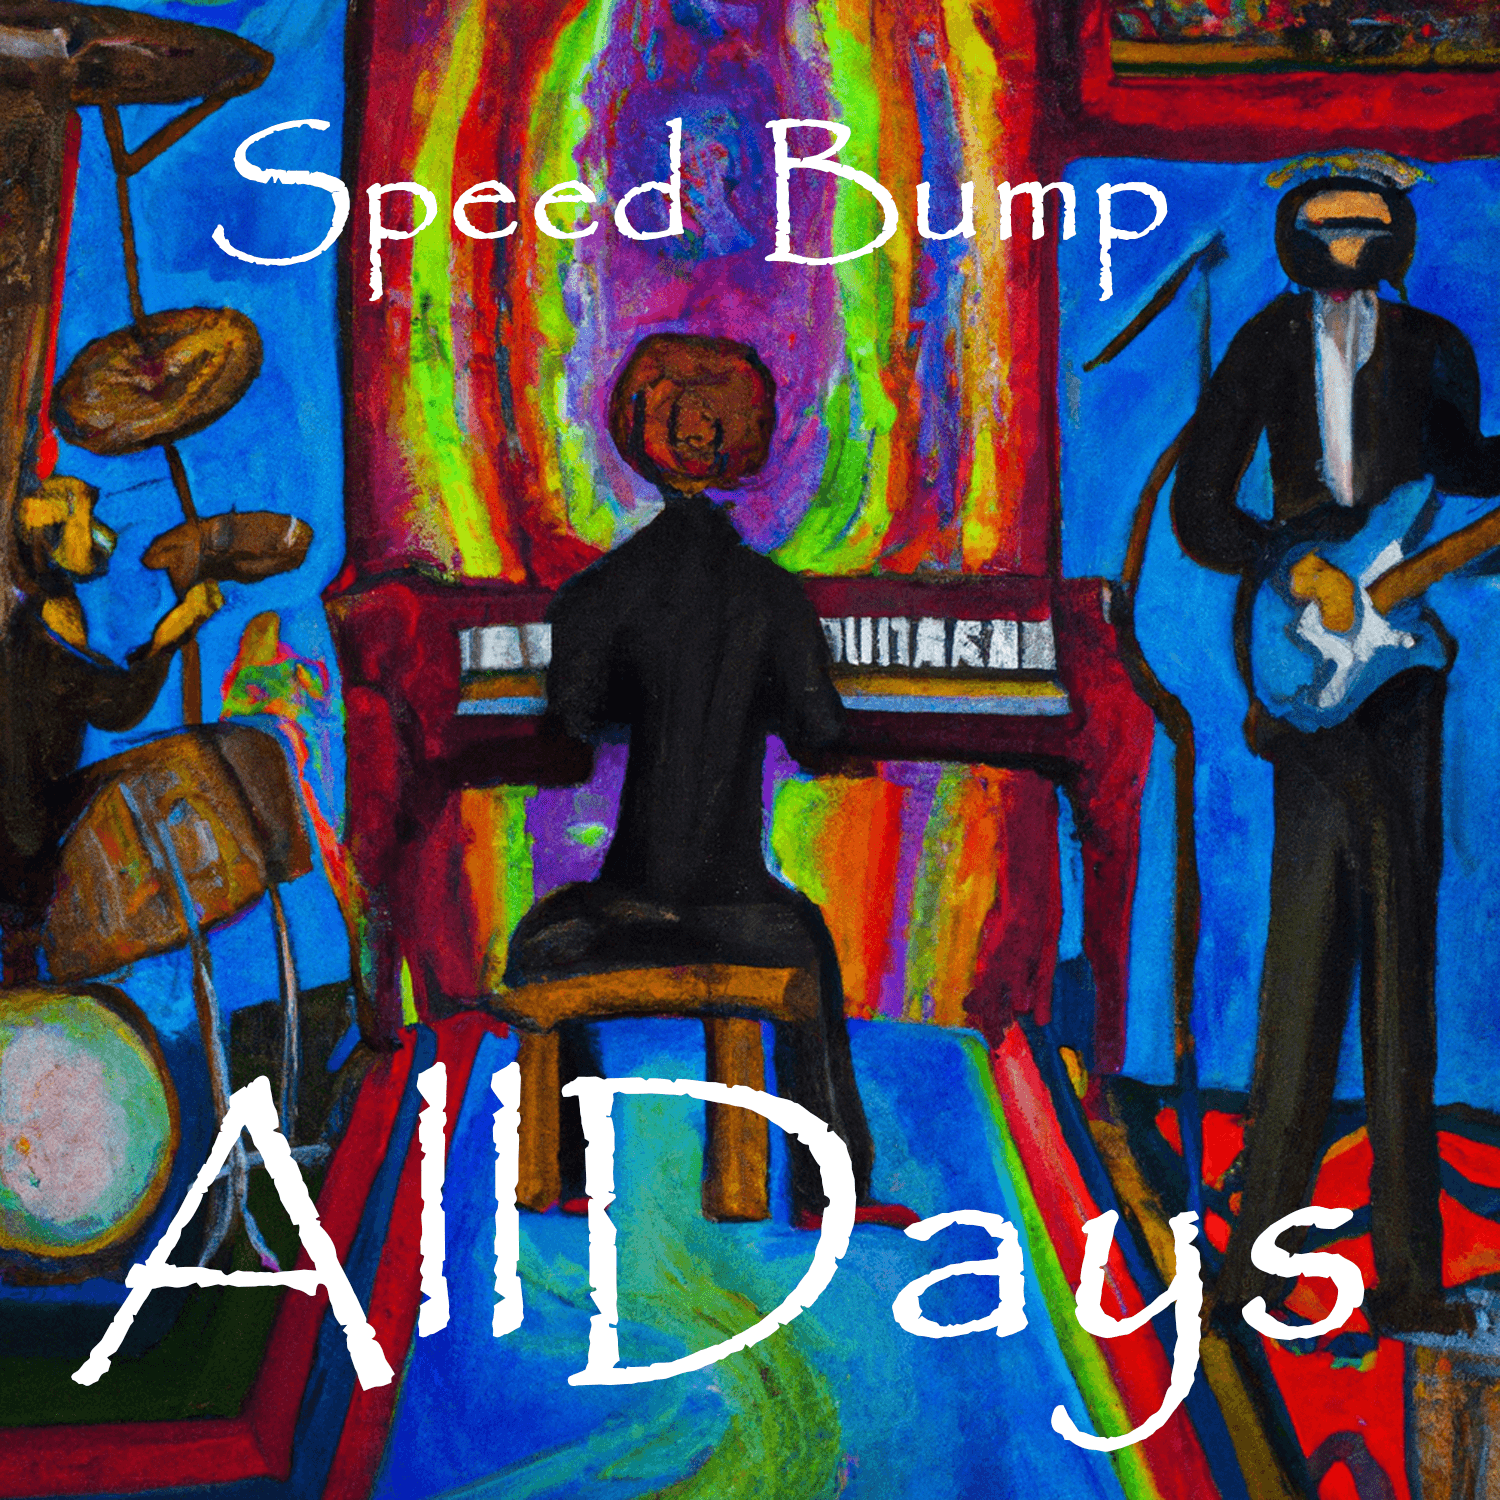 AllDays "Speed Bump" Full Song NFT 7/12